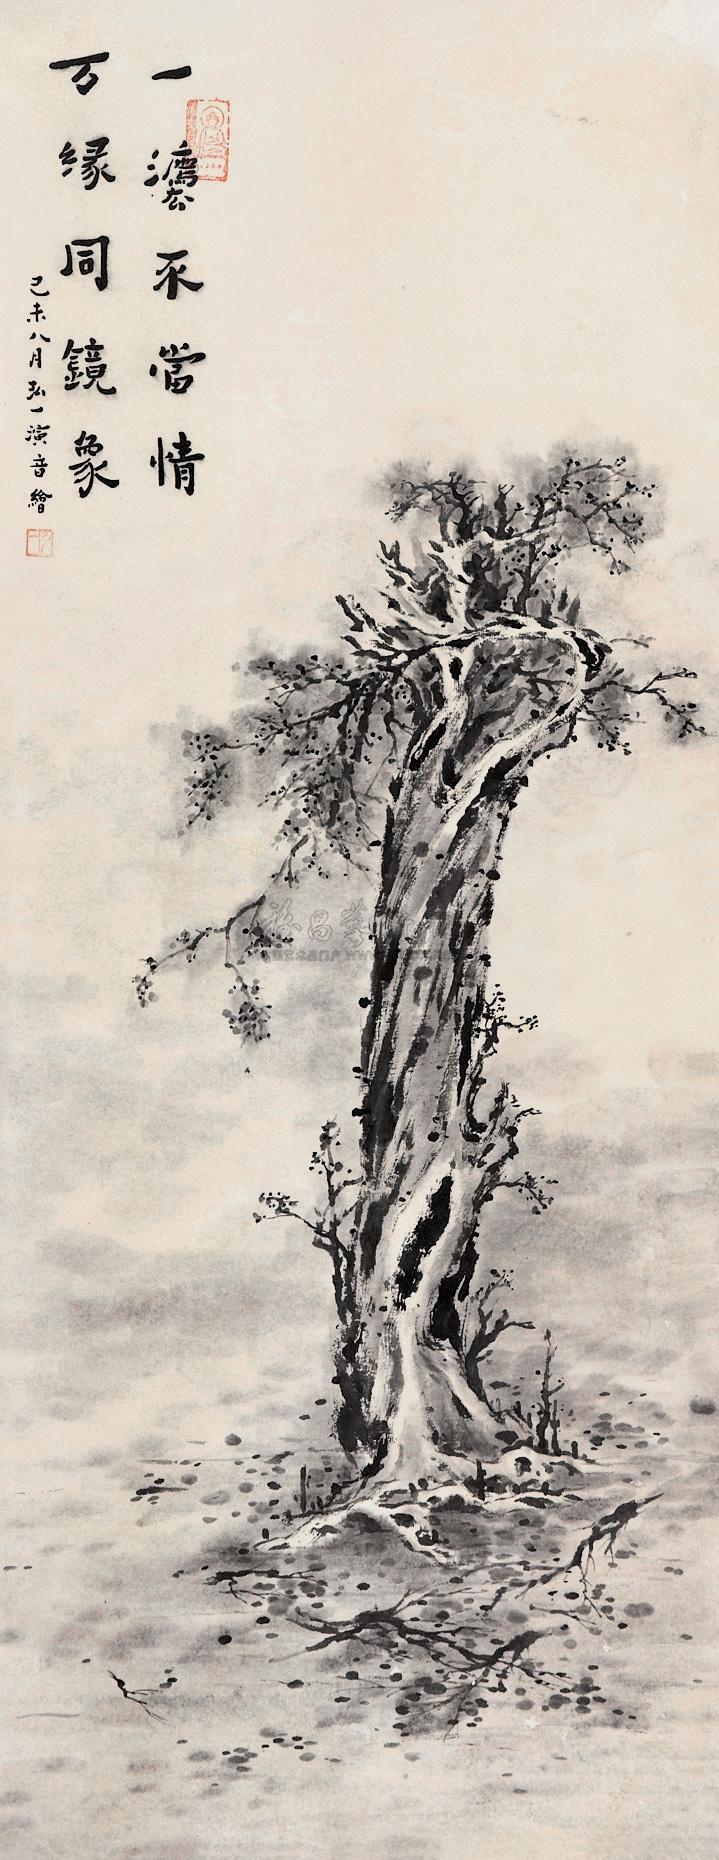 菩提树唯美古风图片